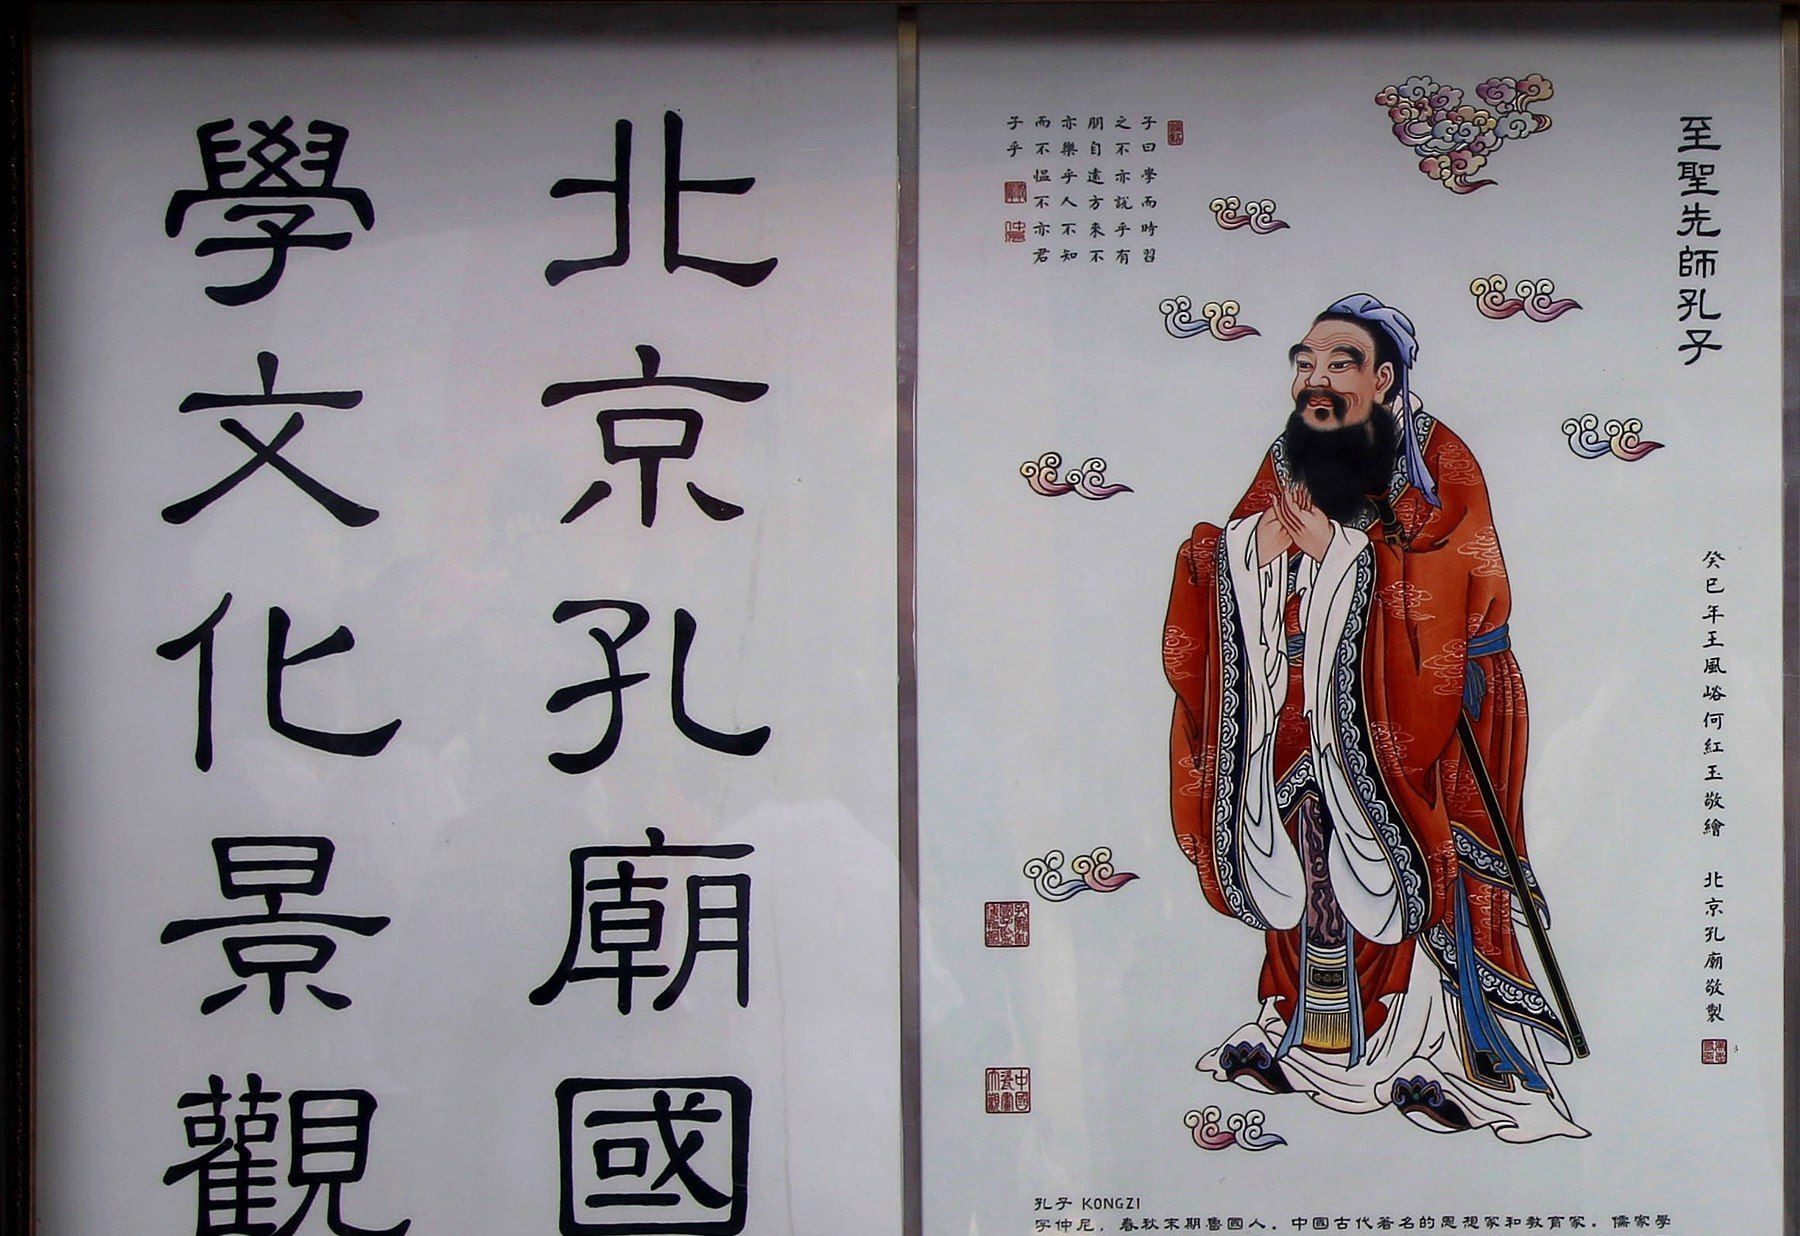 中国风儒家校园文化宣传背景素材免费下载 - 觅知网